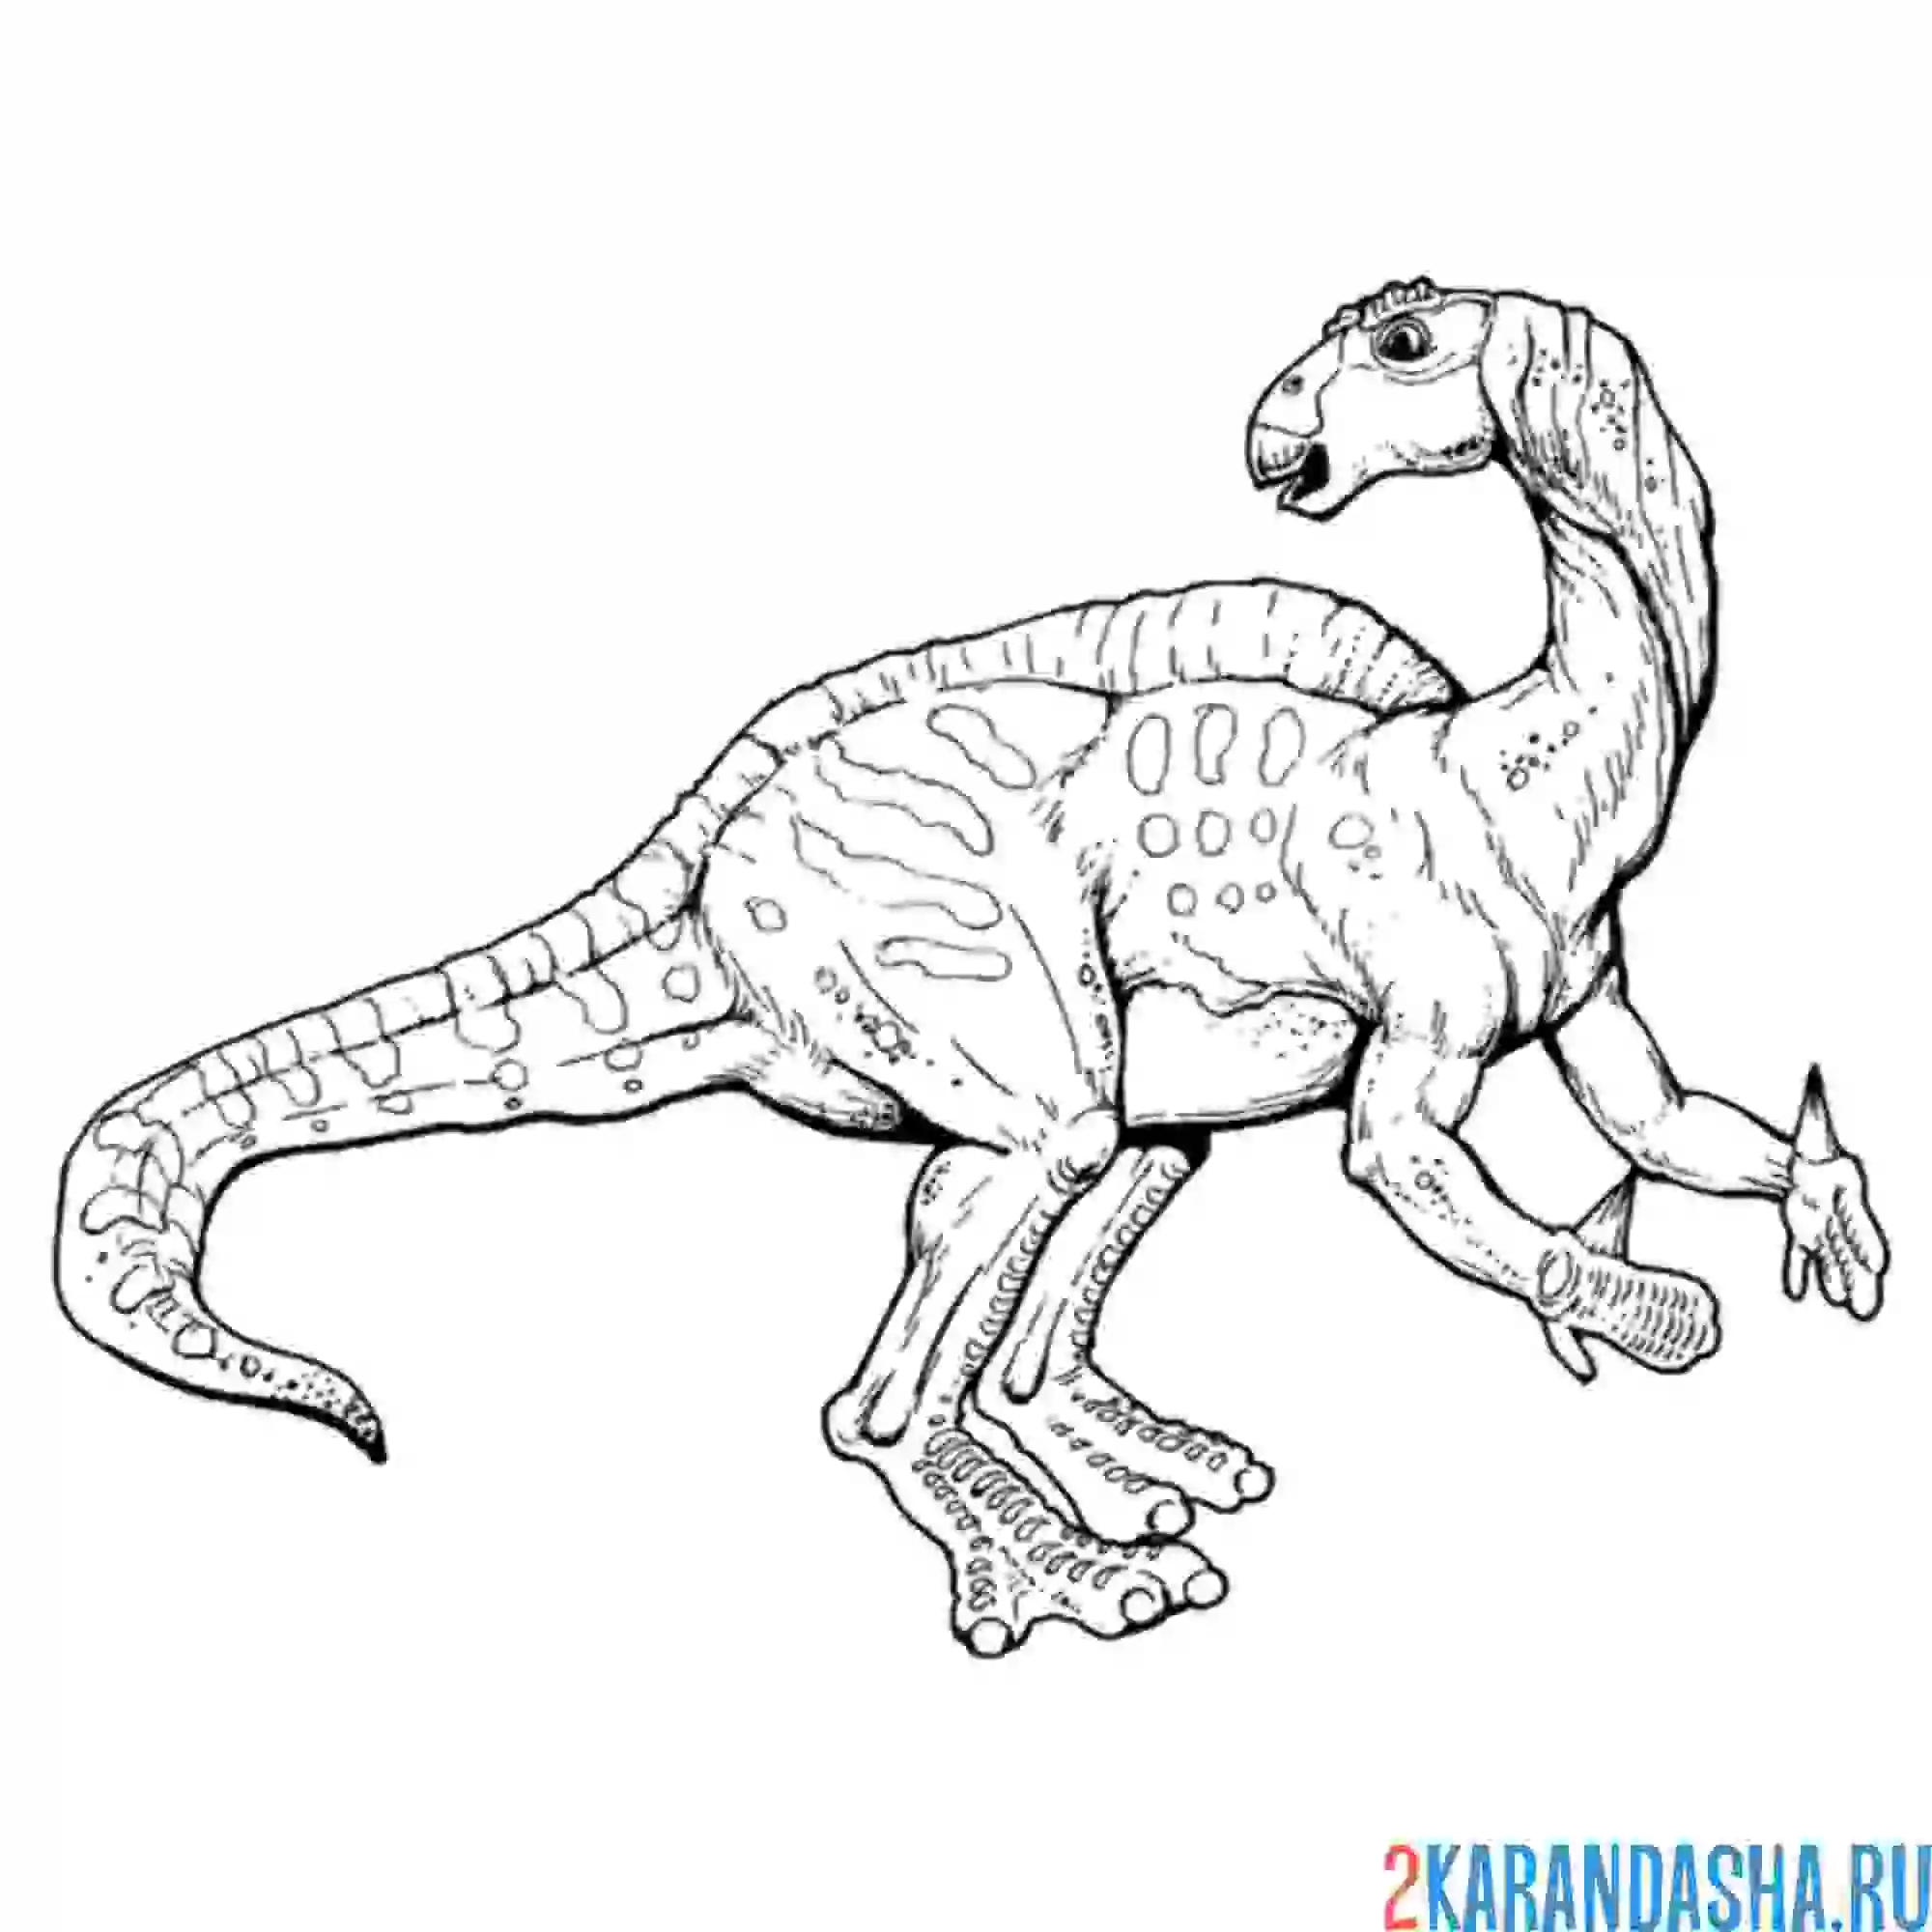 Динозавры раскраска а4. Тарбозавр раскраска динозавра. Игуанодон динозавр раскраска. Раскраски для детей Тарбозавр. Тарбозавр разукрашка.